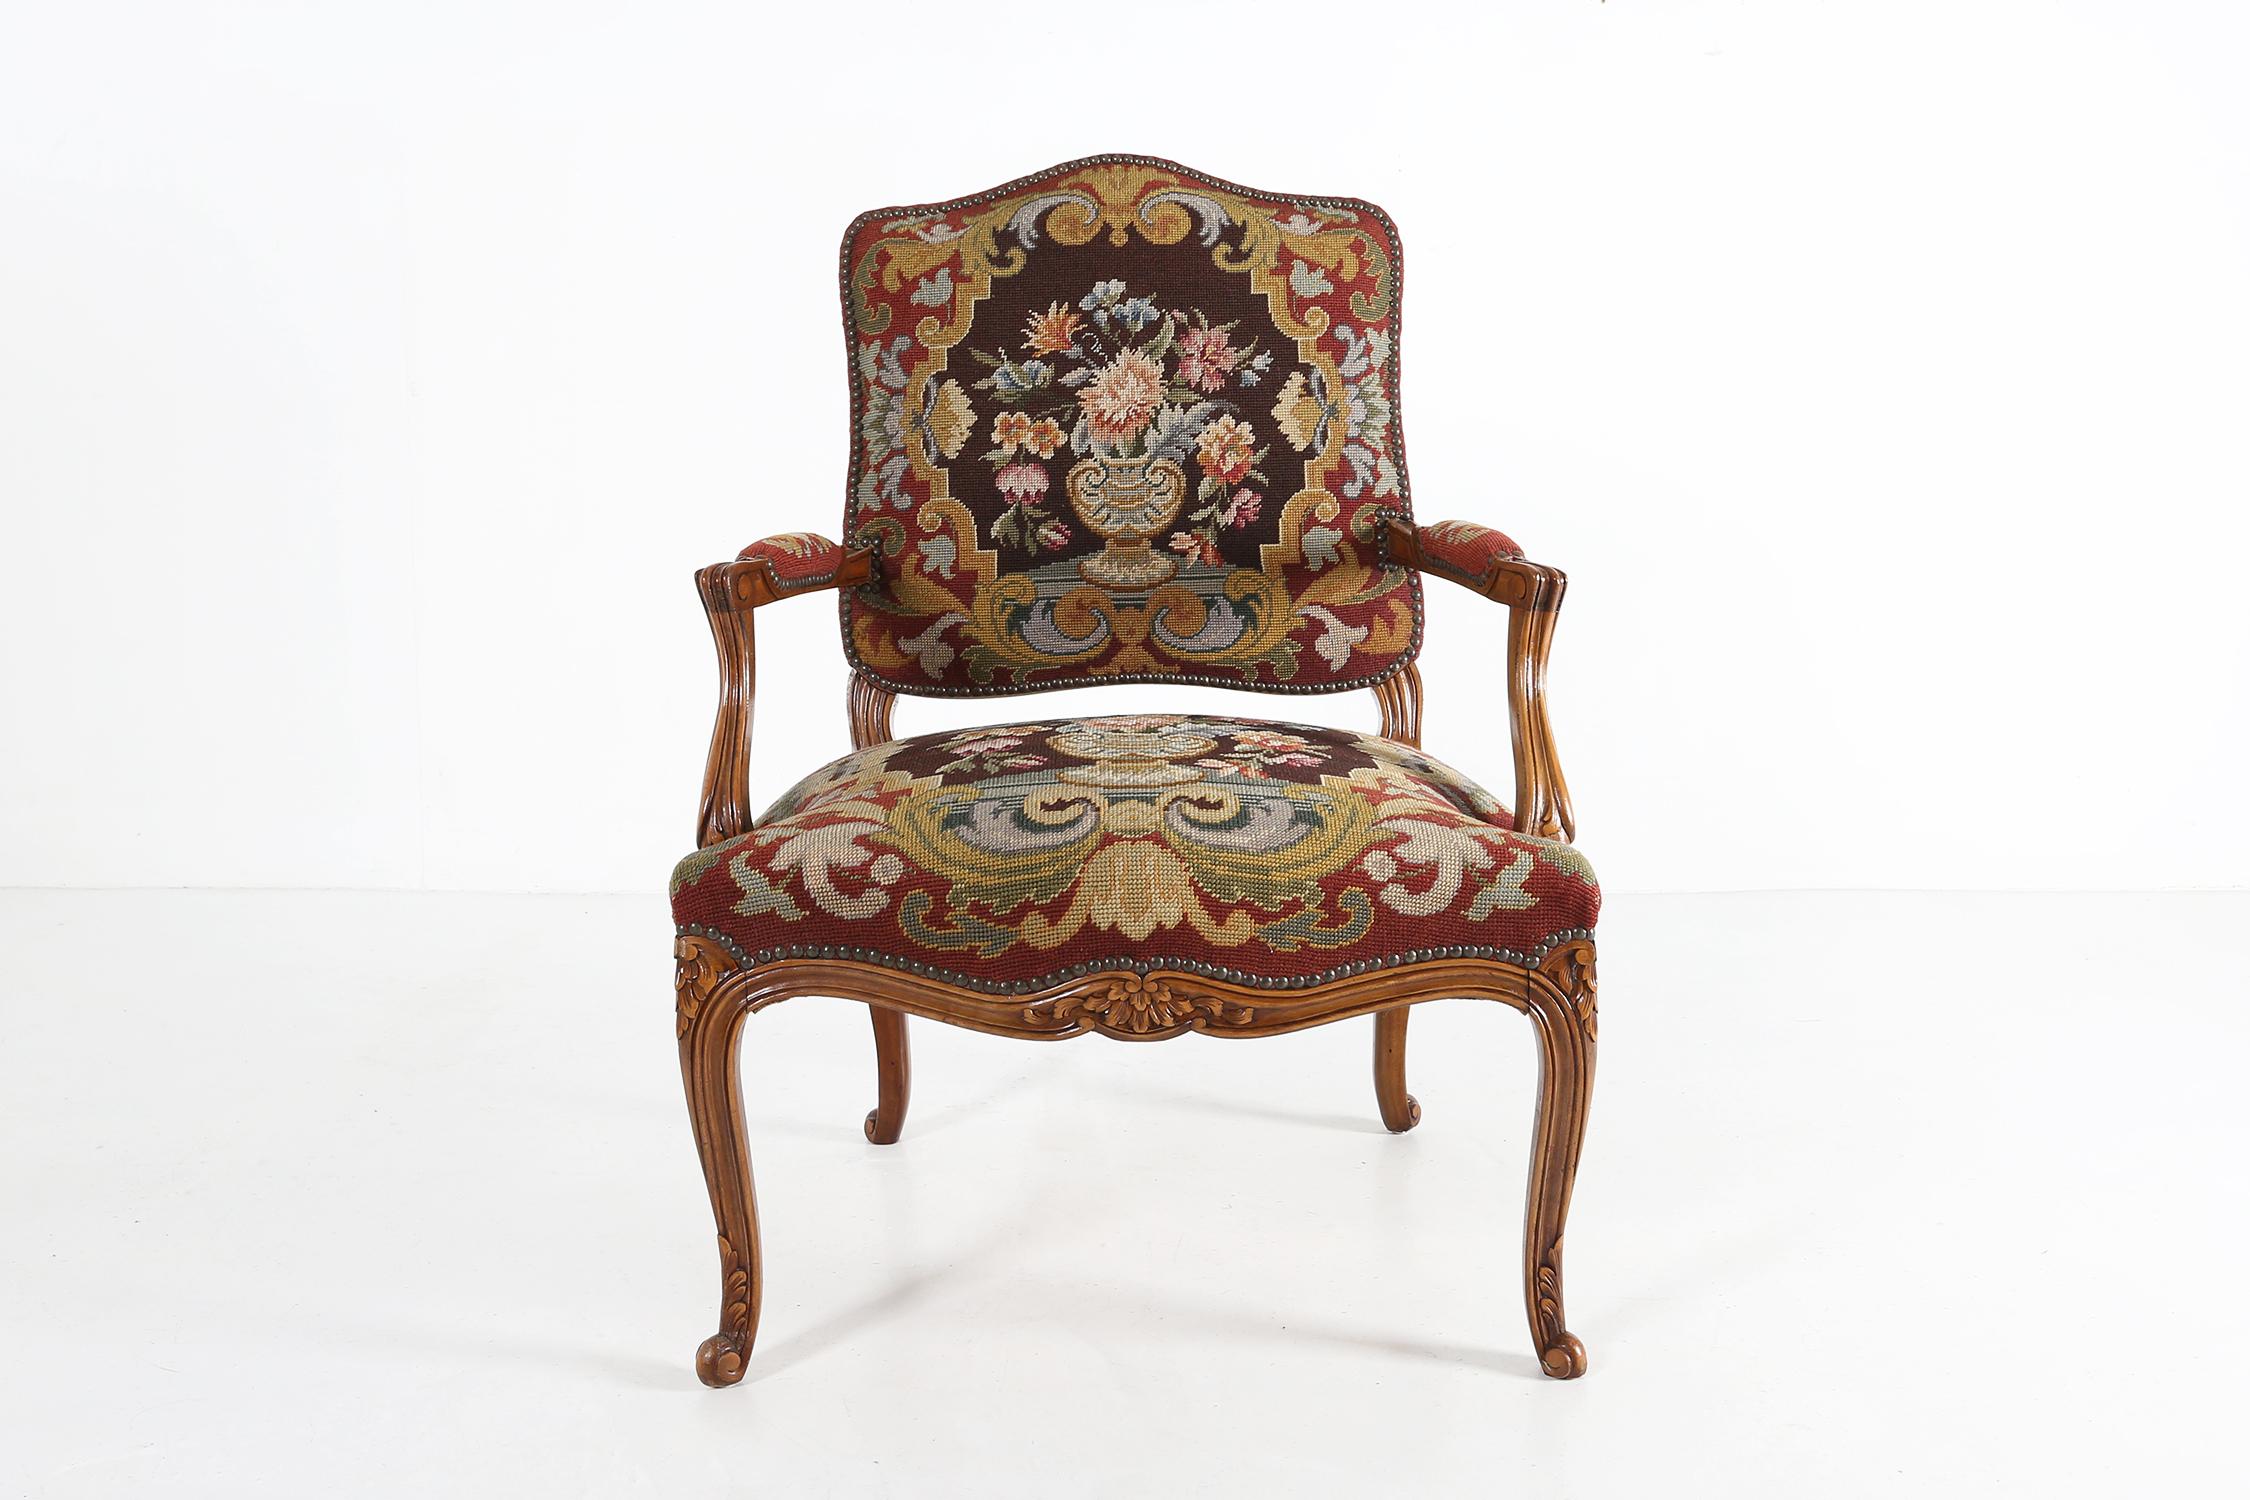 Louis XV-Sessel aus Frankreich.
aus einem massiven Holzsockel mit tollen Skulpturendetails im Holz und einem schönen Stoff mit Blumenmuster.